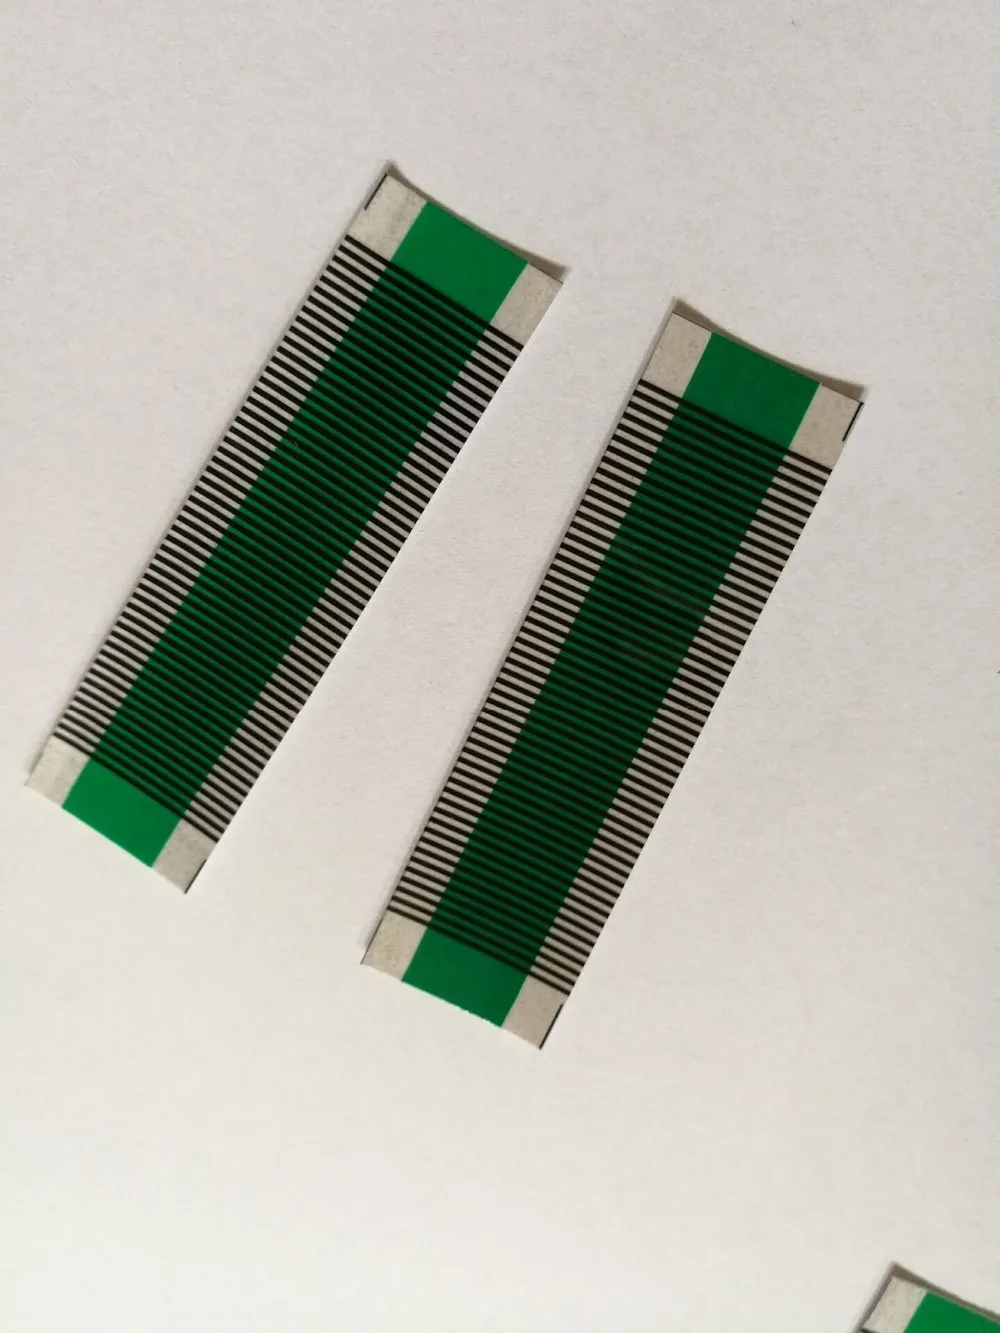 FINETRIP 1 шт. кондиционер блок для Saab 9-5 ACC ленточный кабель автоматический климат контроль ЖК-инструмент для восстановления пикселей дисплея